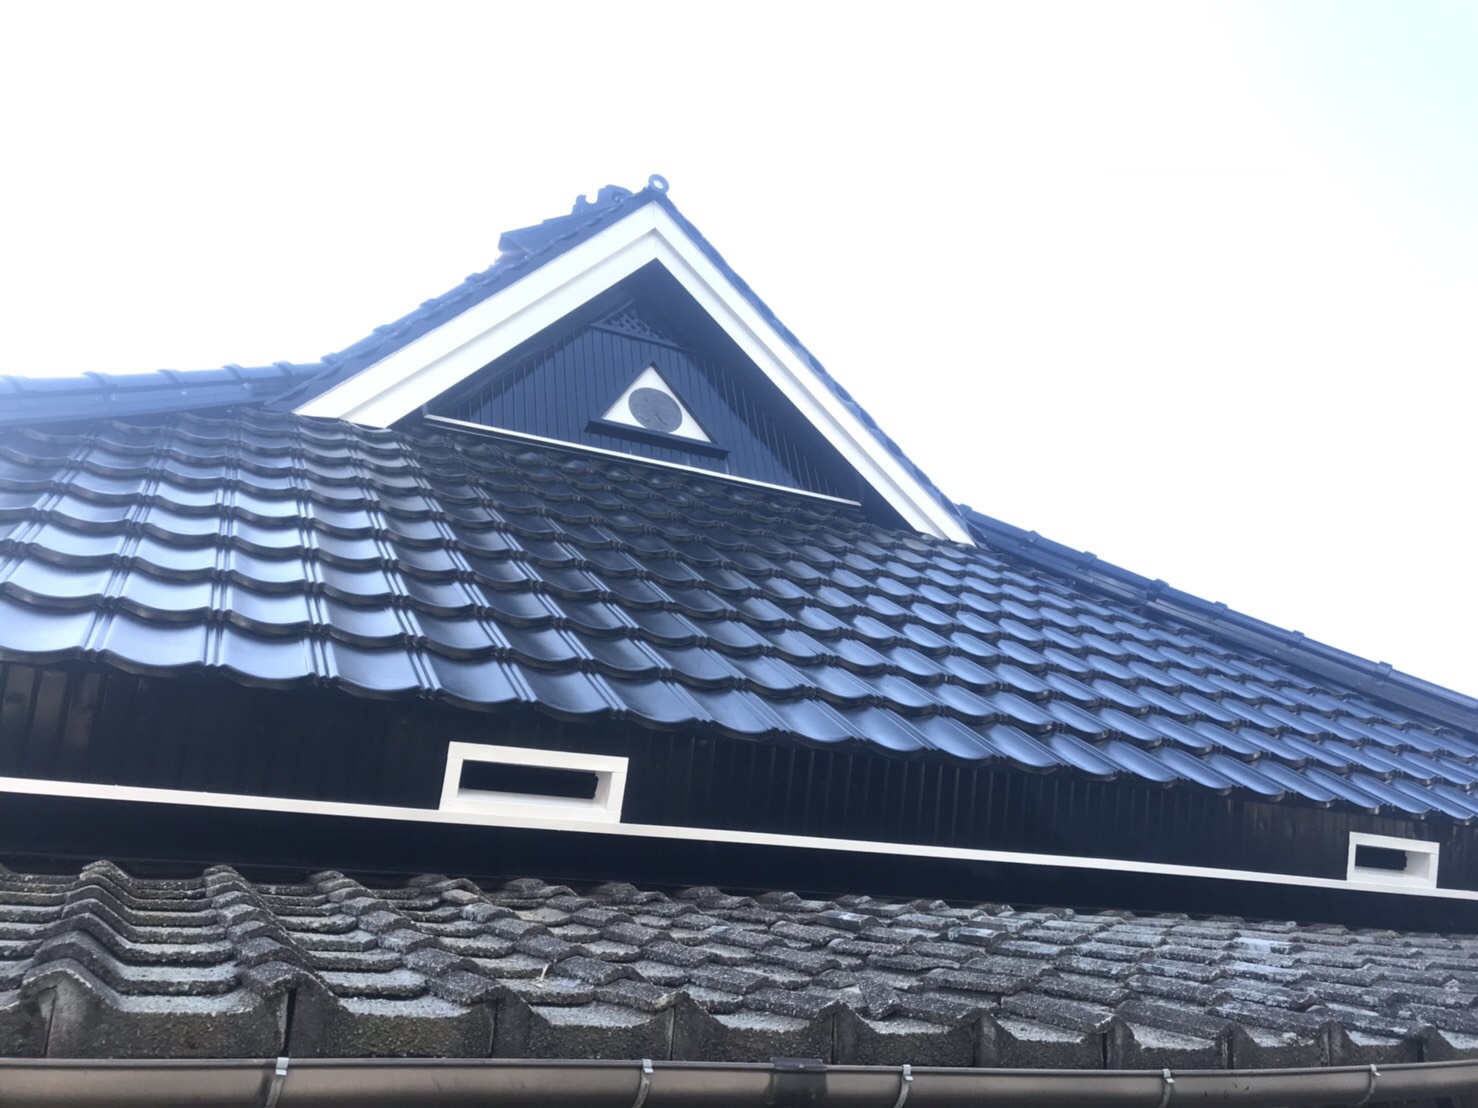 屋根塗装完成